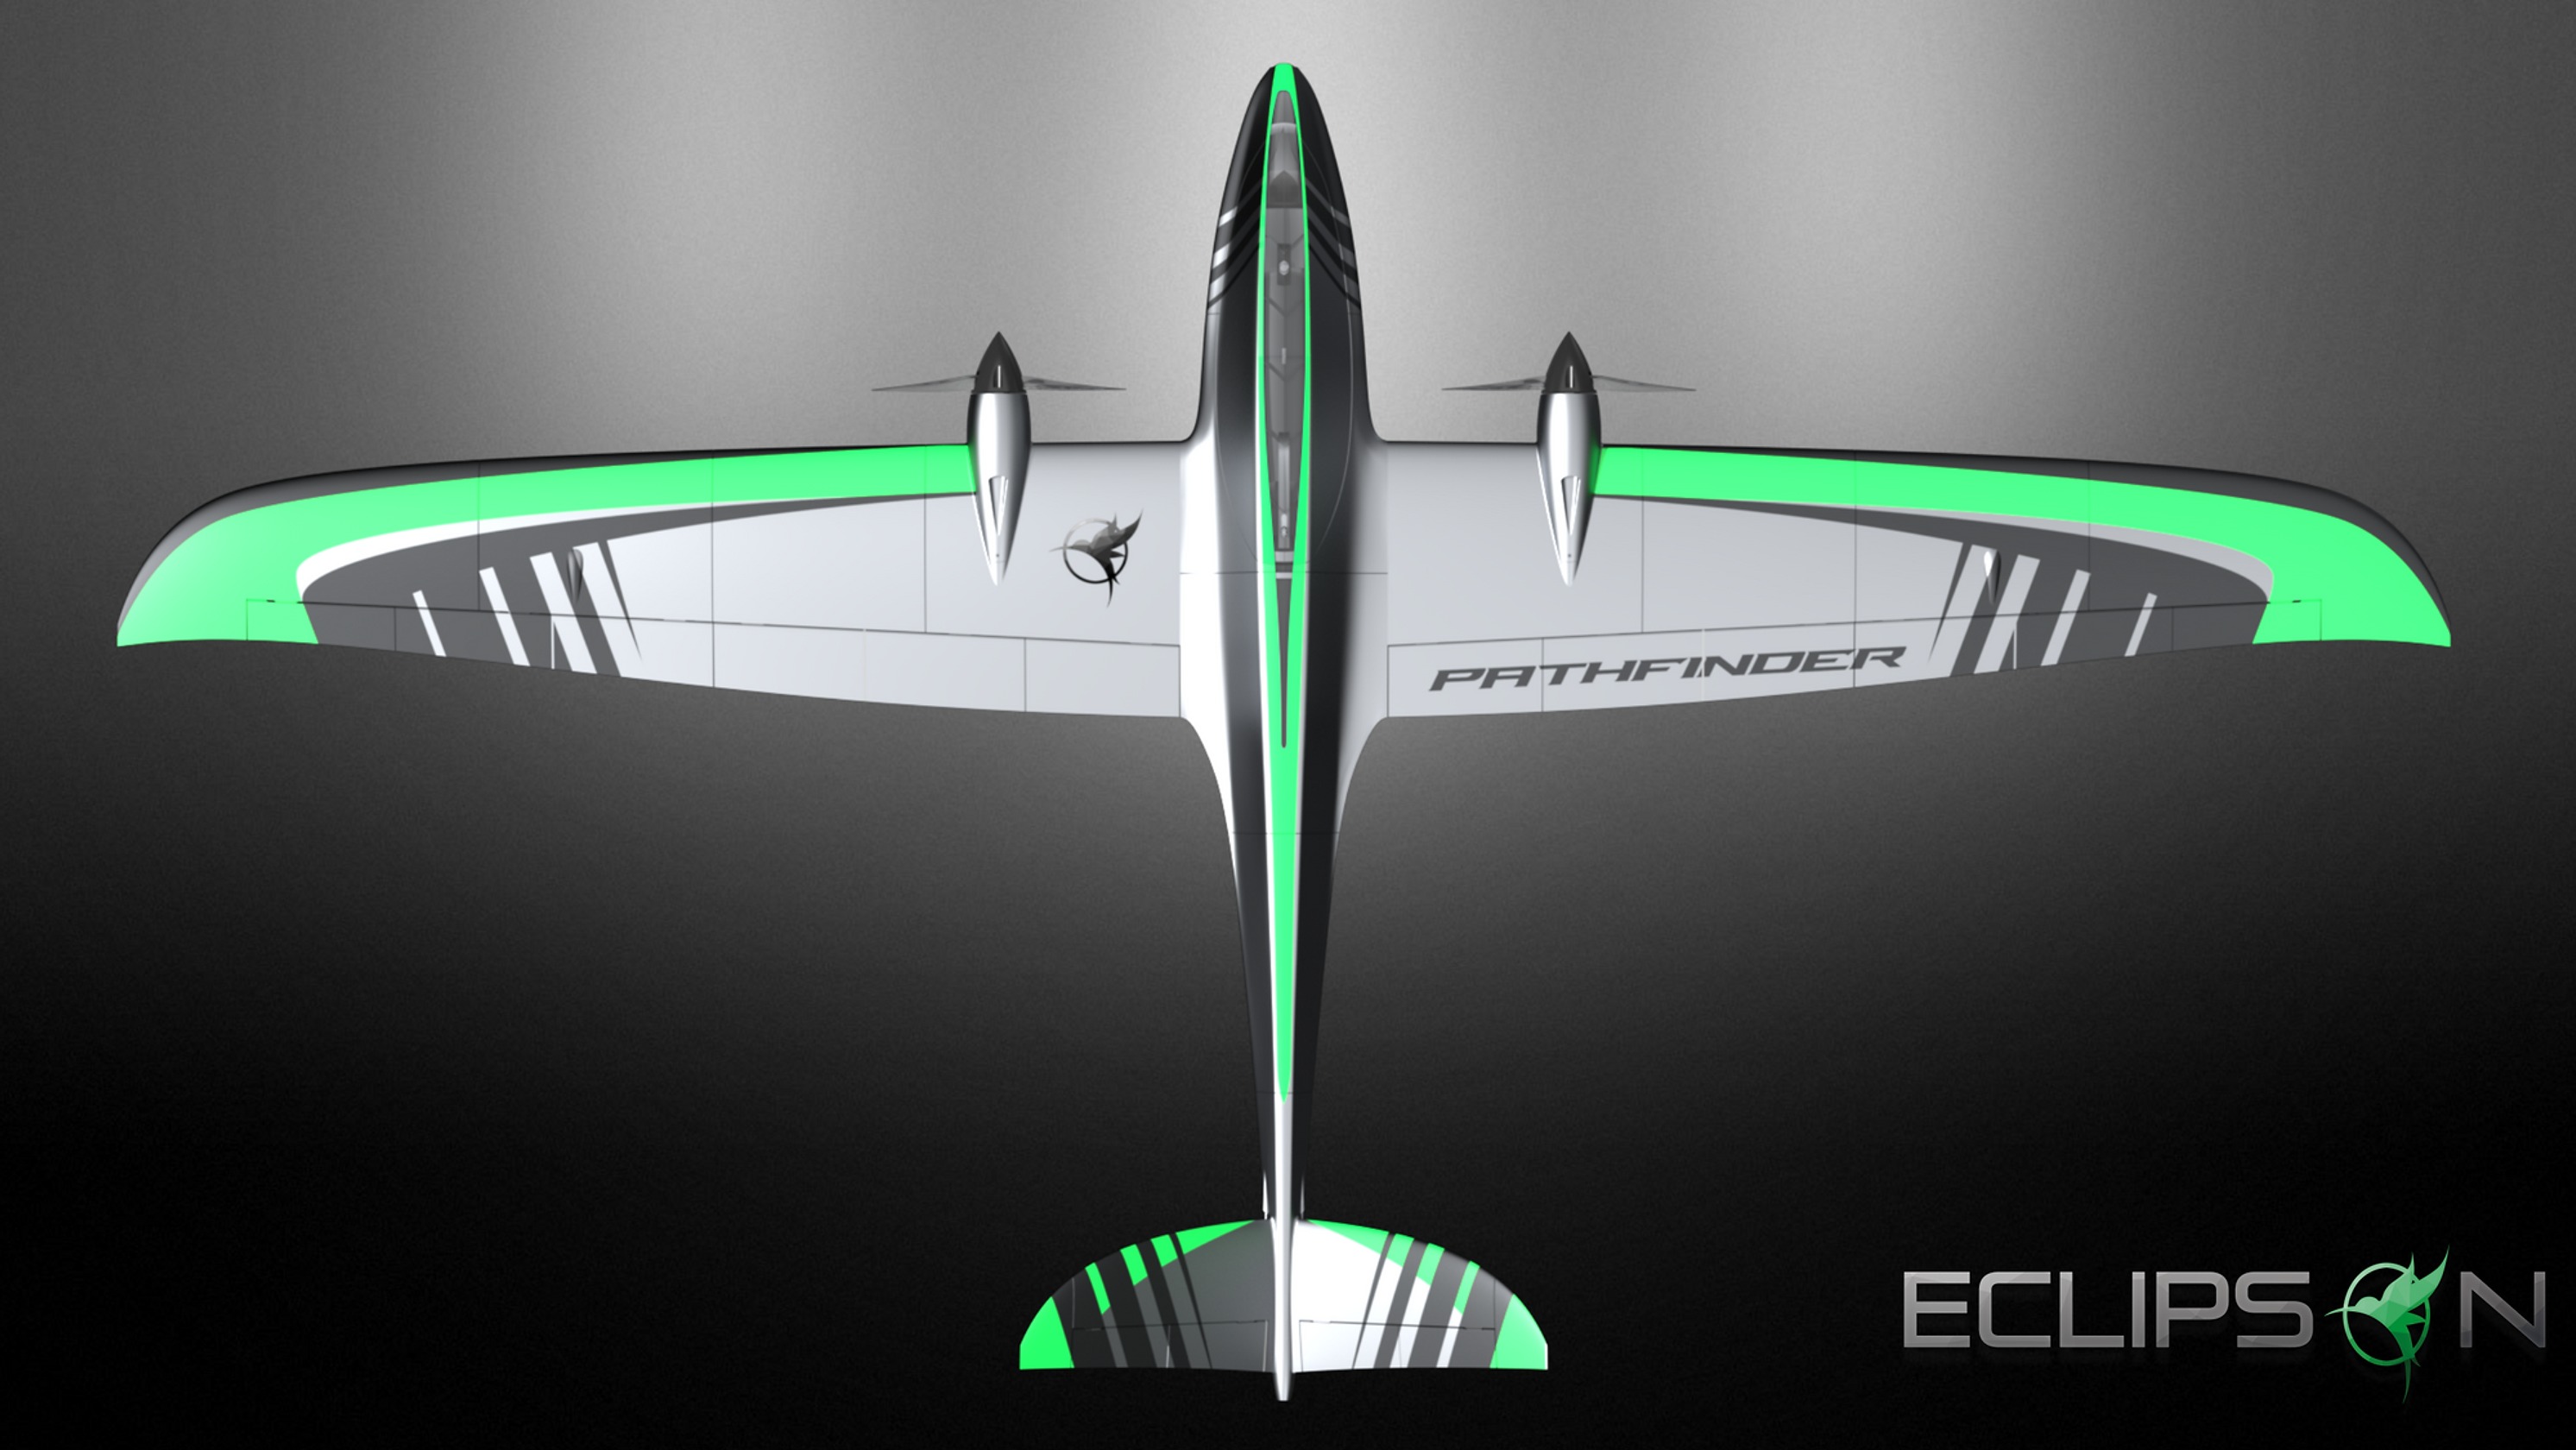 Pathfinder Eclipson Airplanes